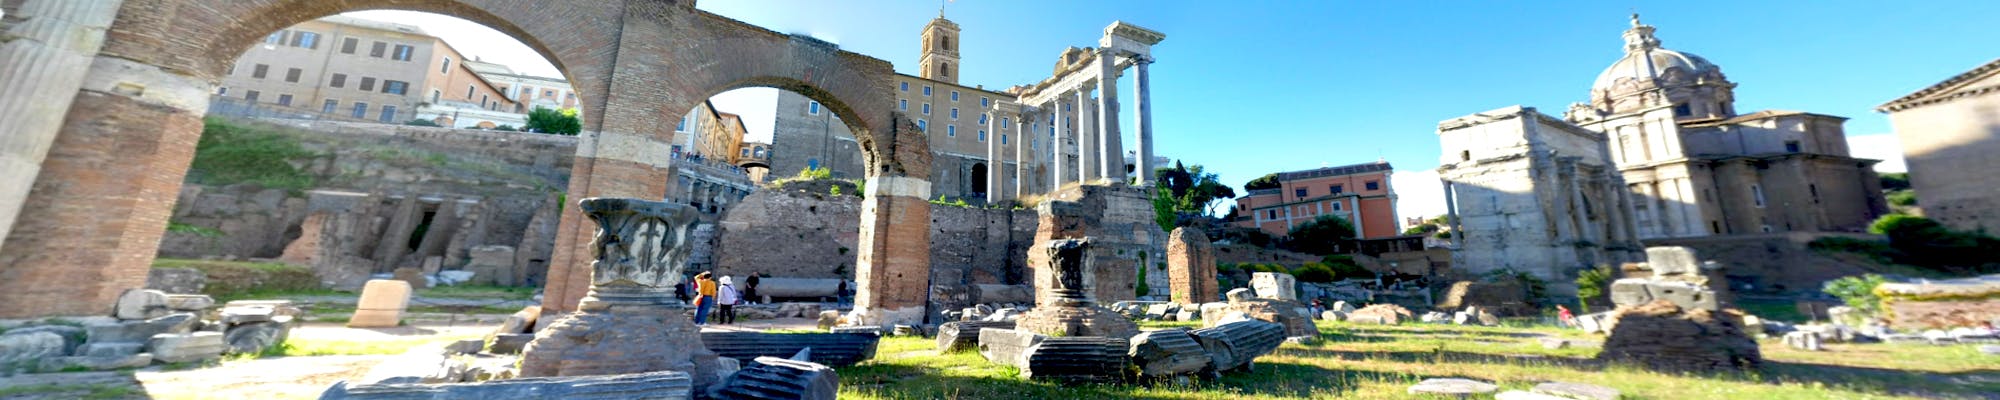 Wirtualny spacer po Forum Romanum z domowego zacisza